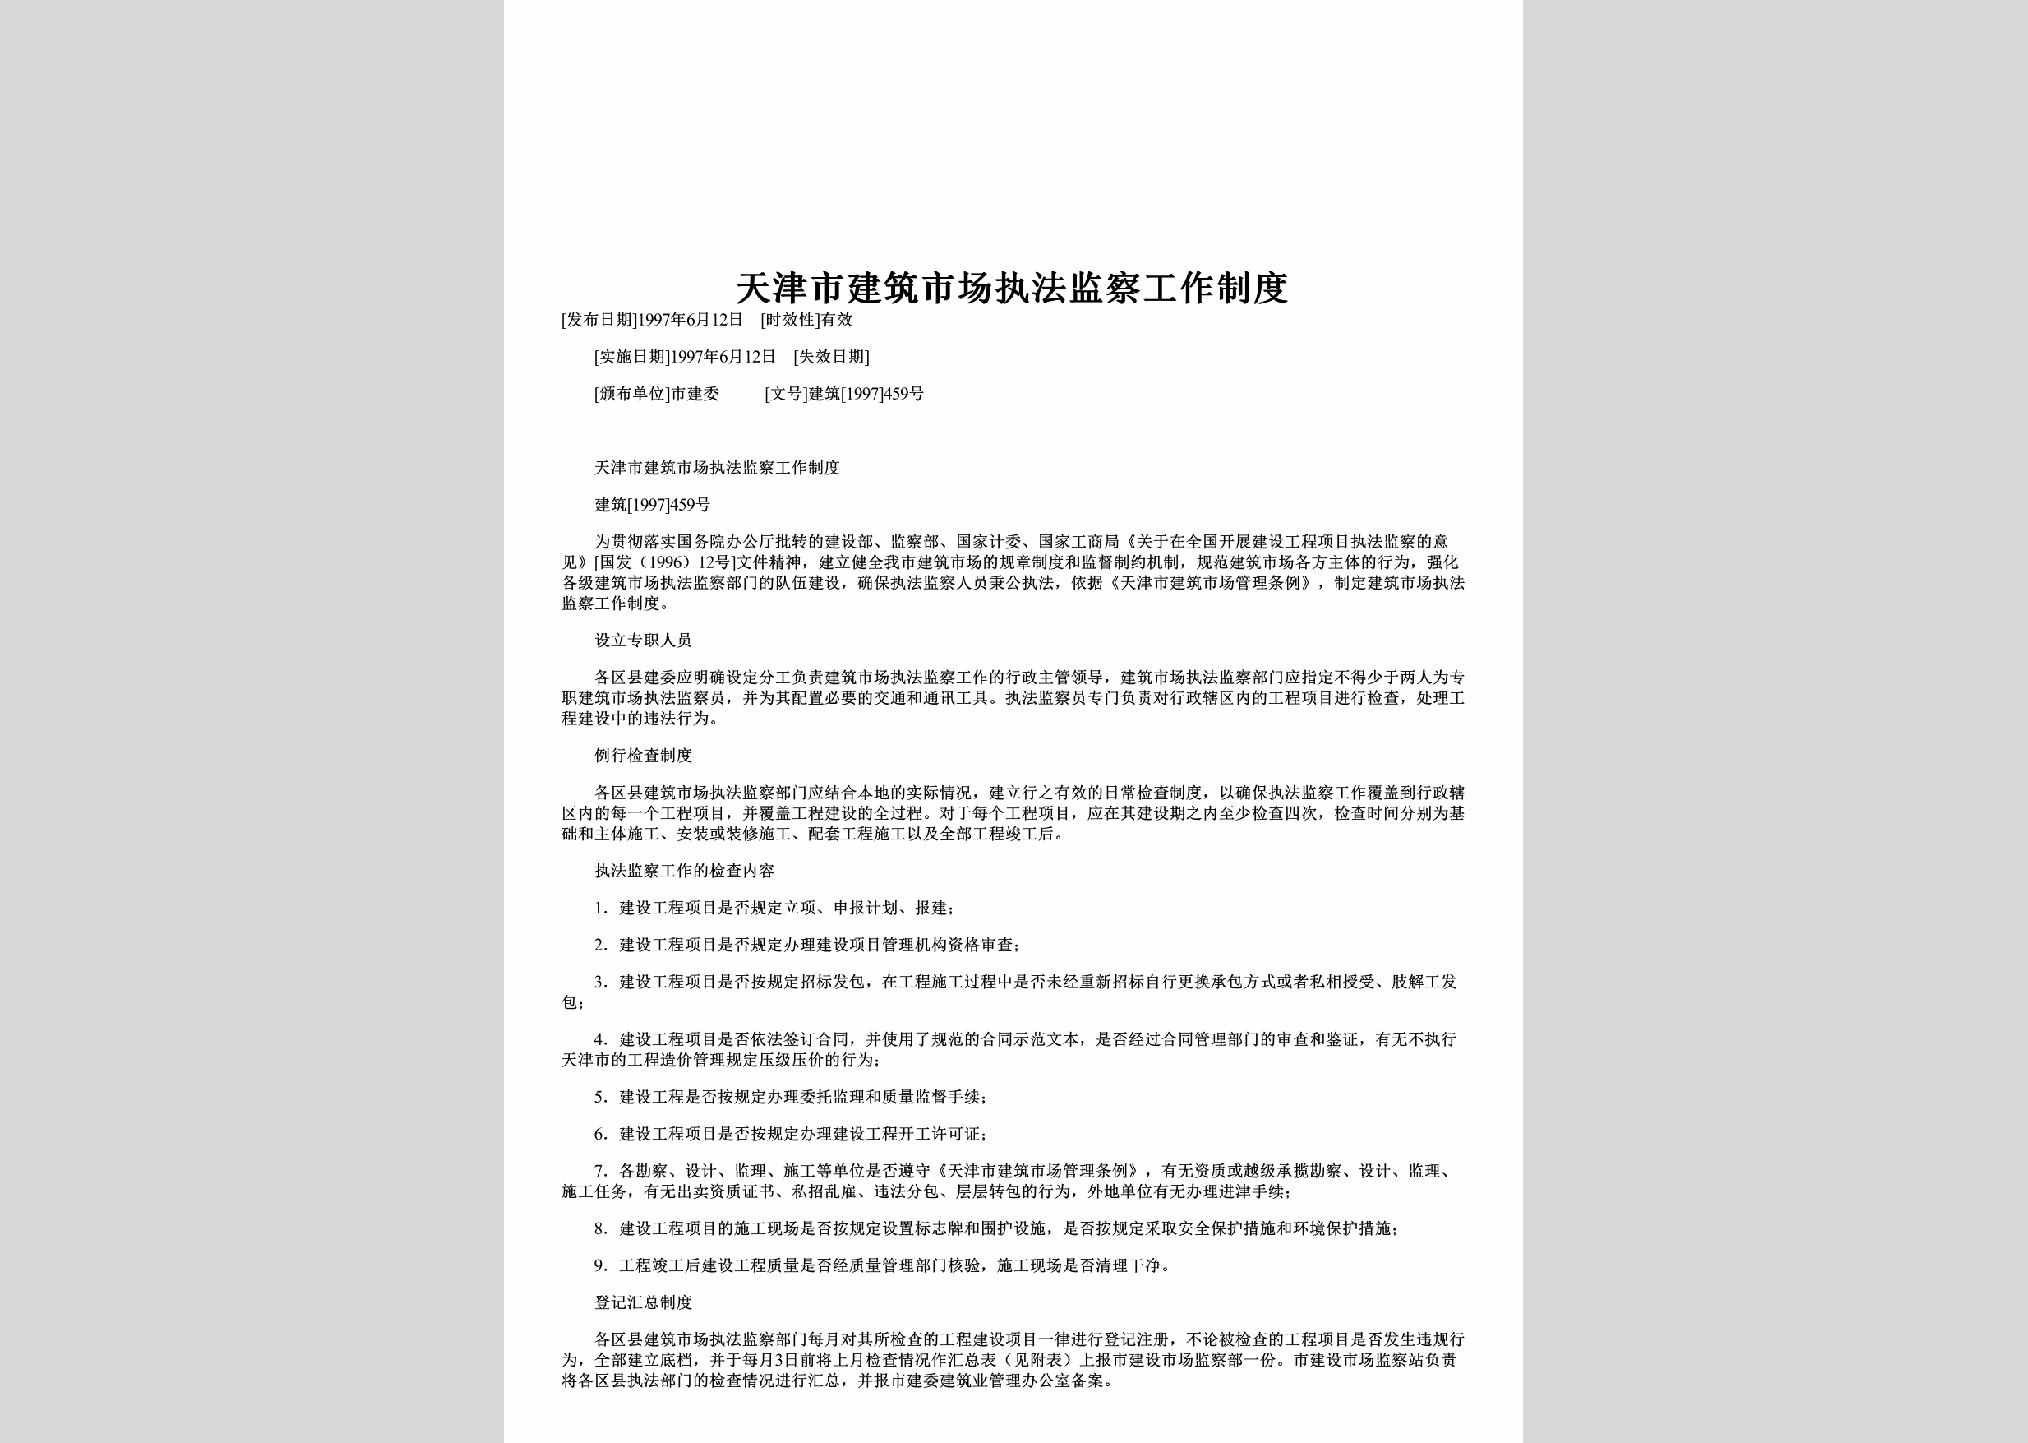 建筑[1997]459号：天津市建筑市场执法监察工作制度